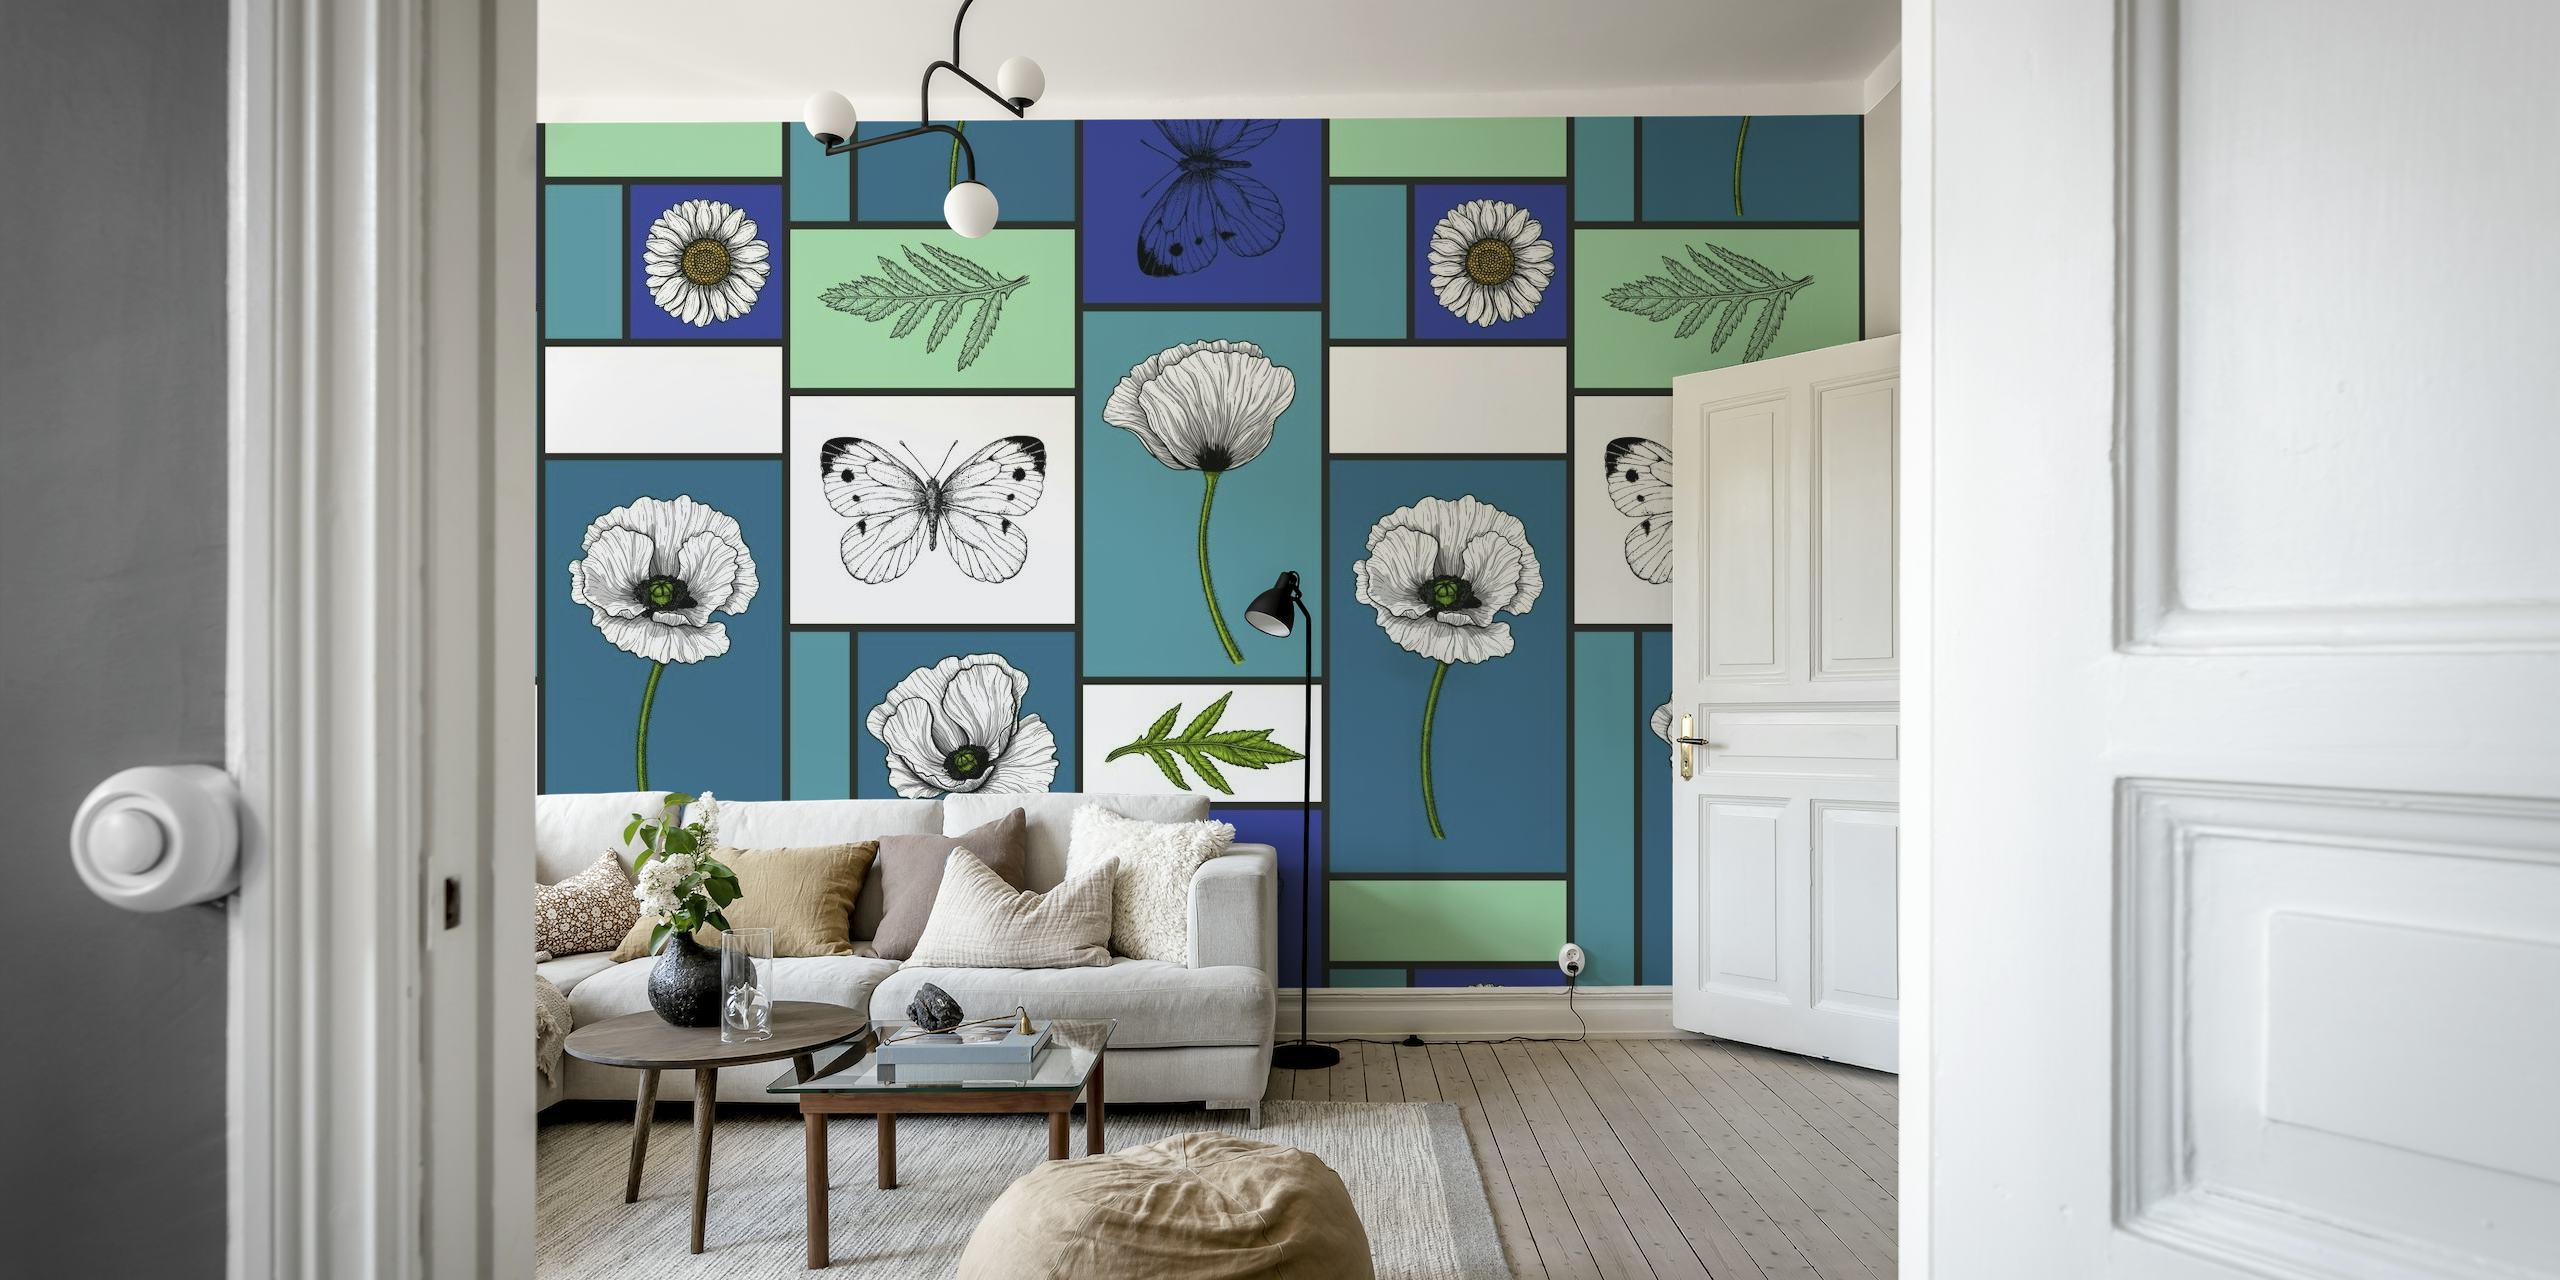 Kleurrijk fotobehang van klaprozen, madeliefjes en vlinders in een geometrisch patroon